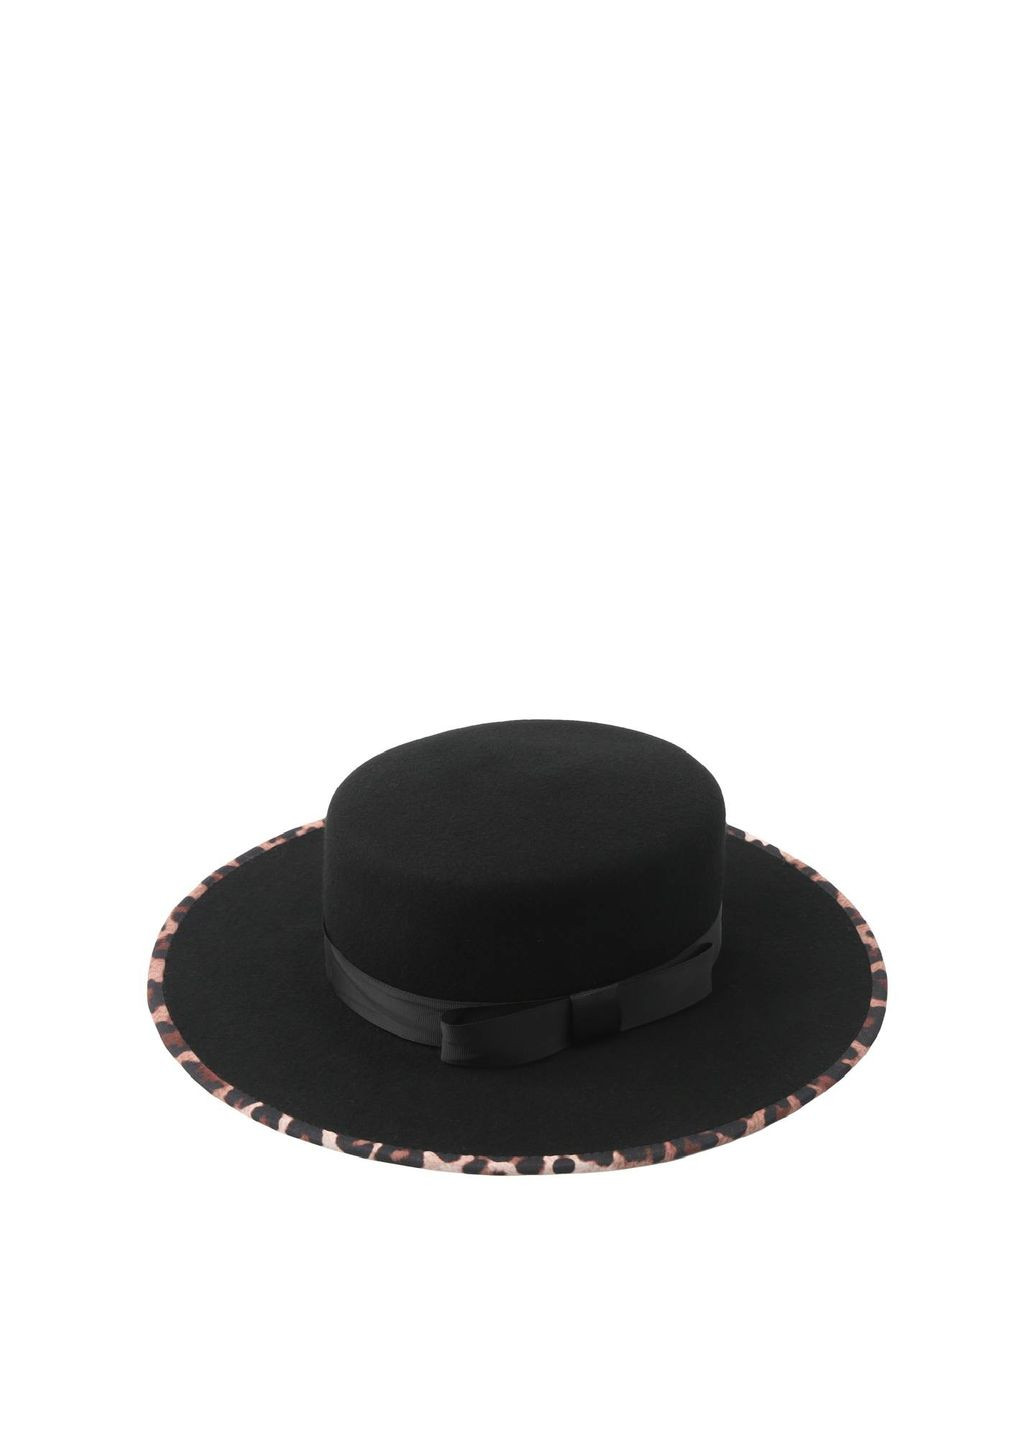 Шляпа канотье женская шерсть черная LuckyLOOK 928-451 (289478360)